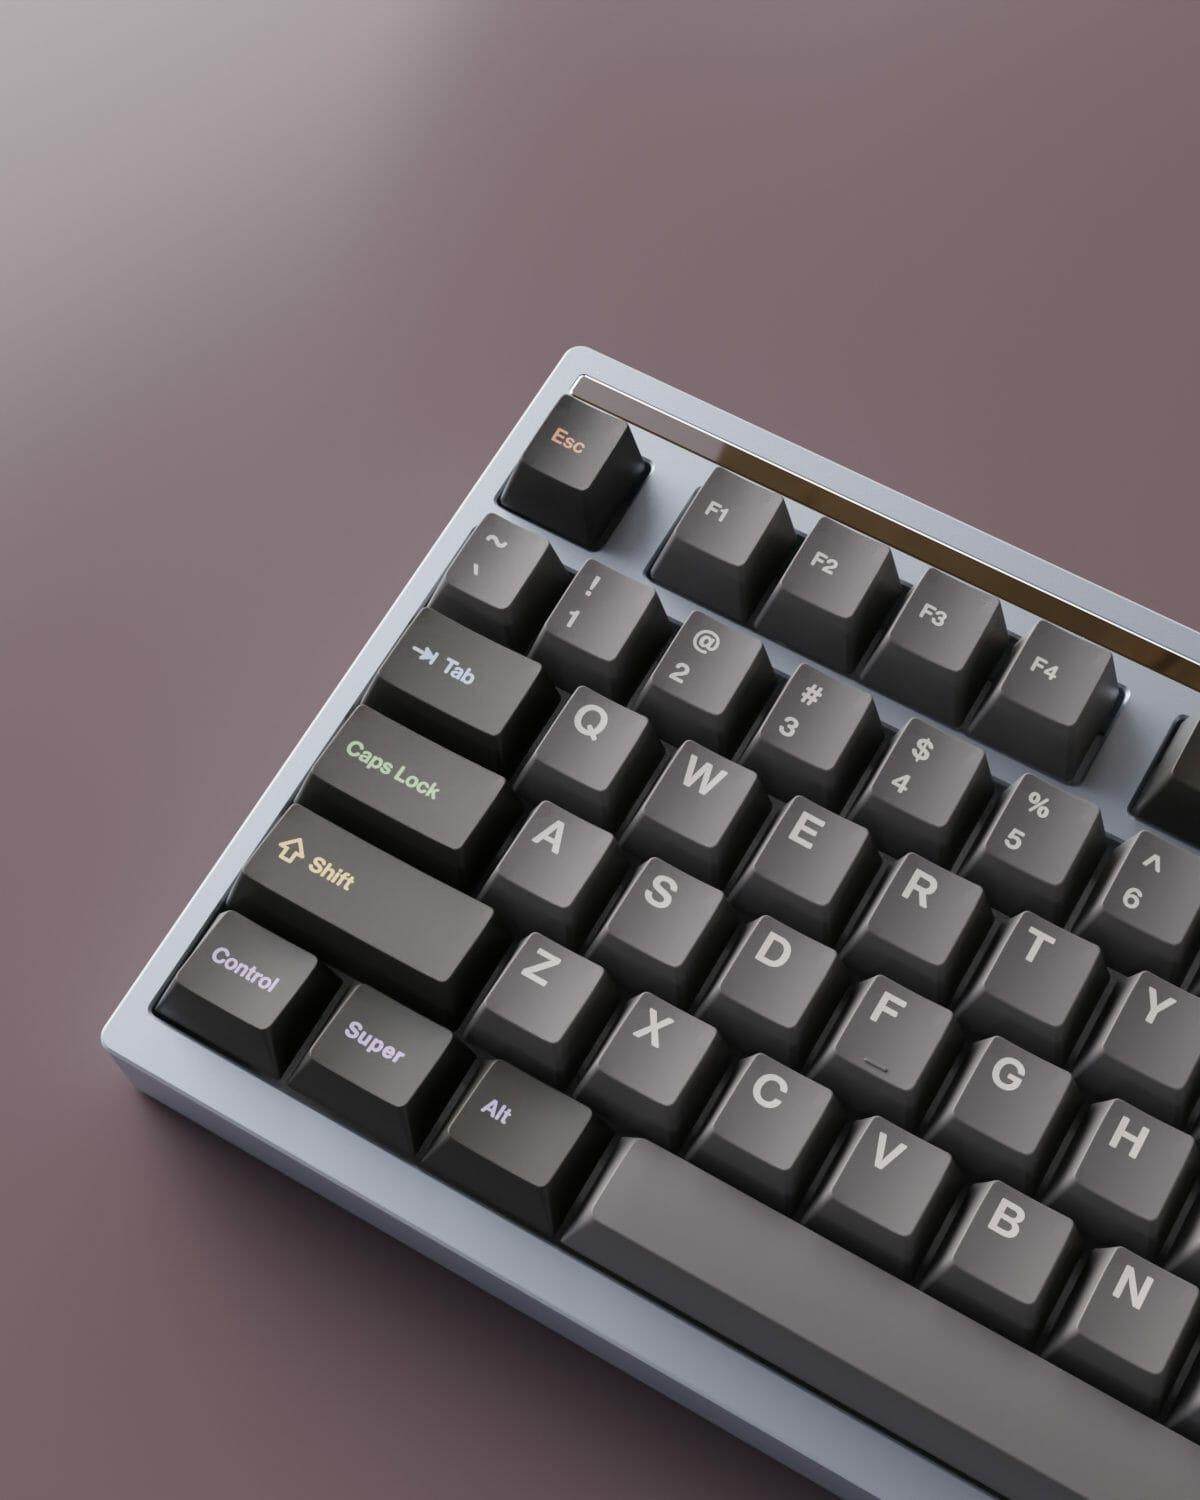 zenaim keyboard 8月購入 スタビライザー修正品 新品未開封